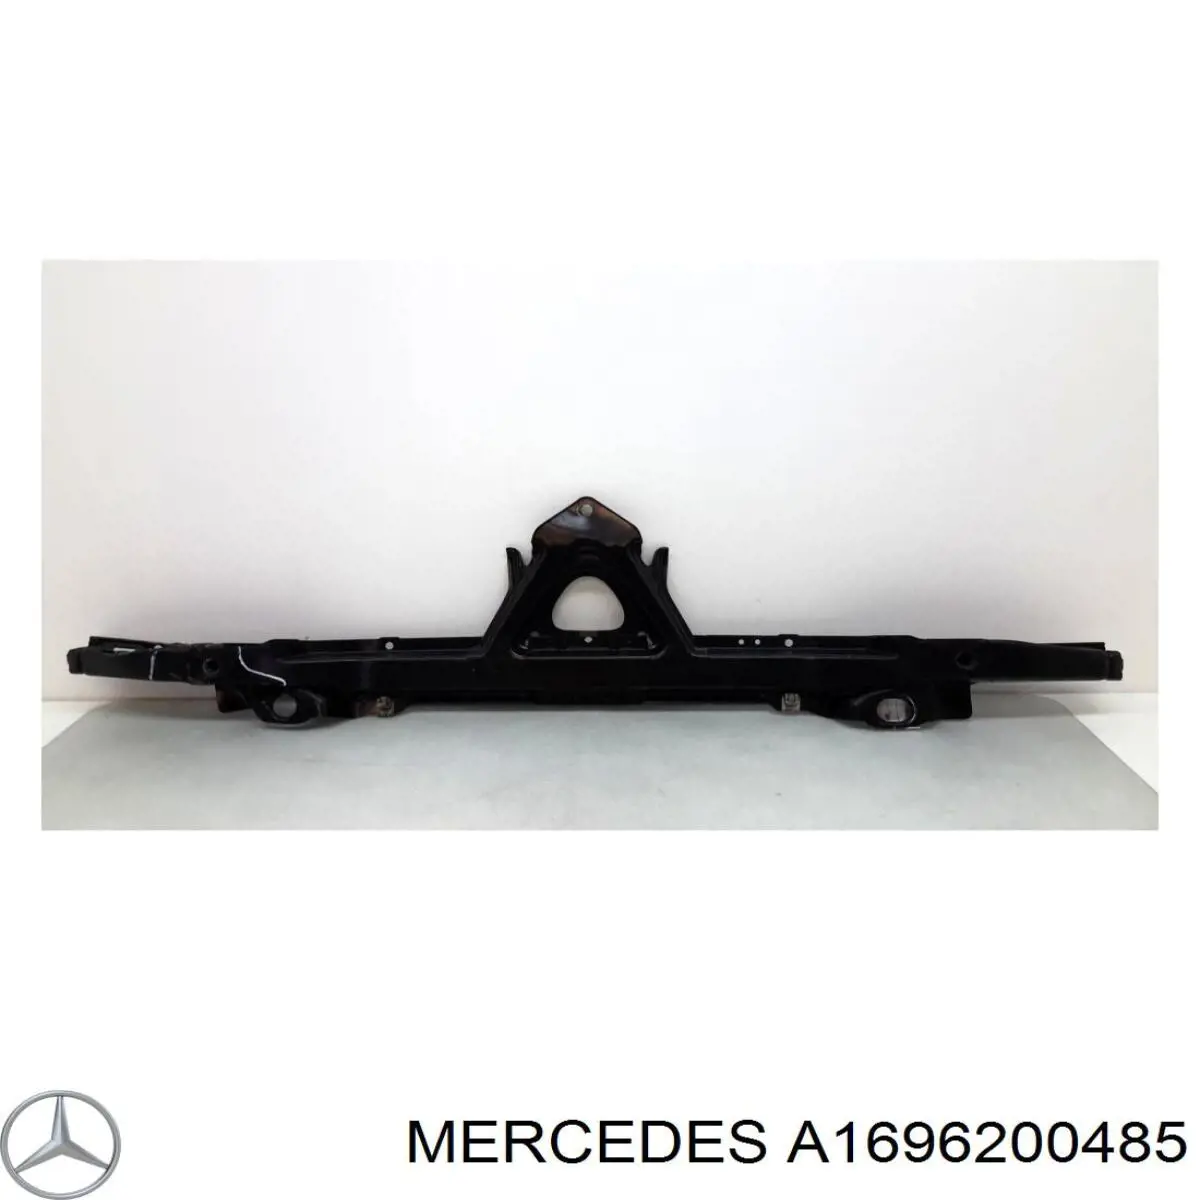 A1696200485 Mercedes apoyo de radiador inferior